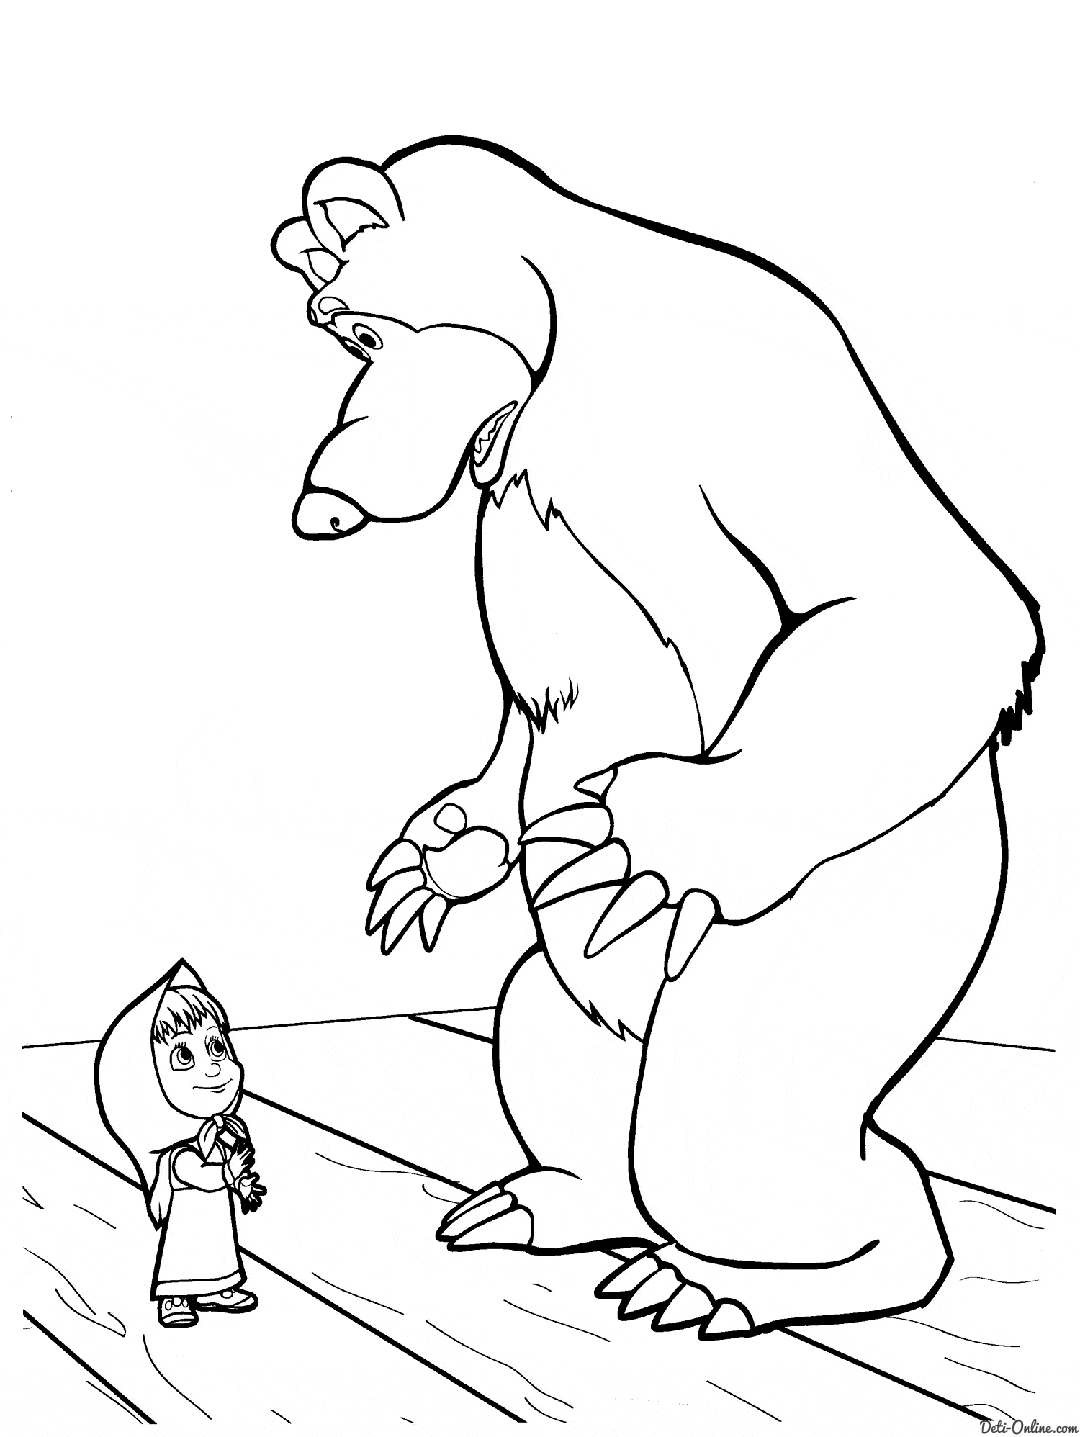  раскраски на тему маша и медведь для мальчиков и девочек. Интересные раскраски с персонажами мультфильма маша и медведь для детей           